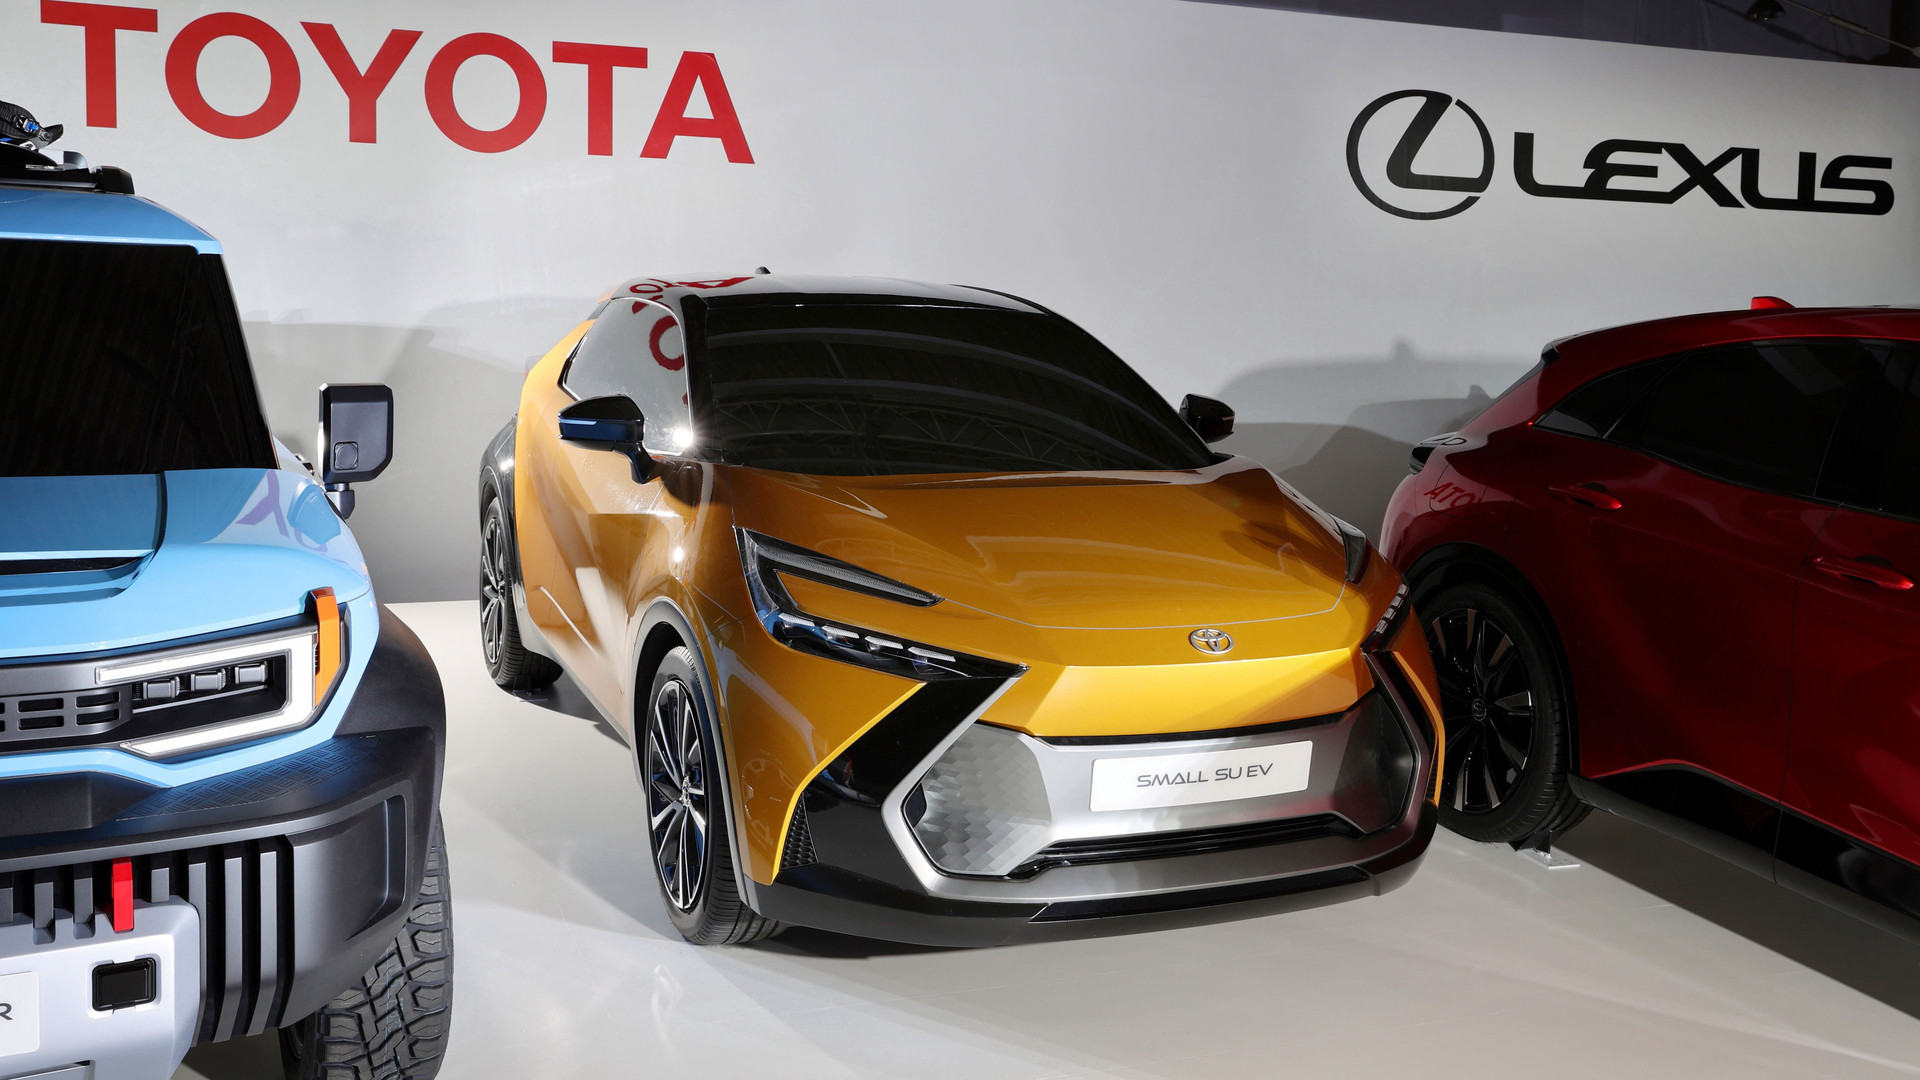 Tại sao Toyota, nhà sản xuất ô tô lớn nhất thế giới, từ chối chuyển hoàn toàn sang xe điện? - Ảnh 2.